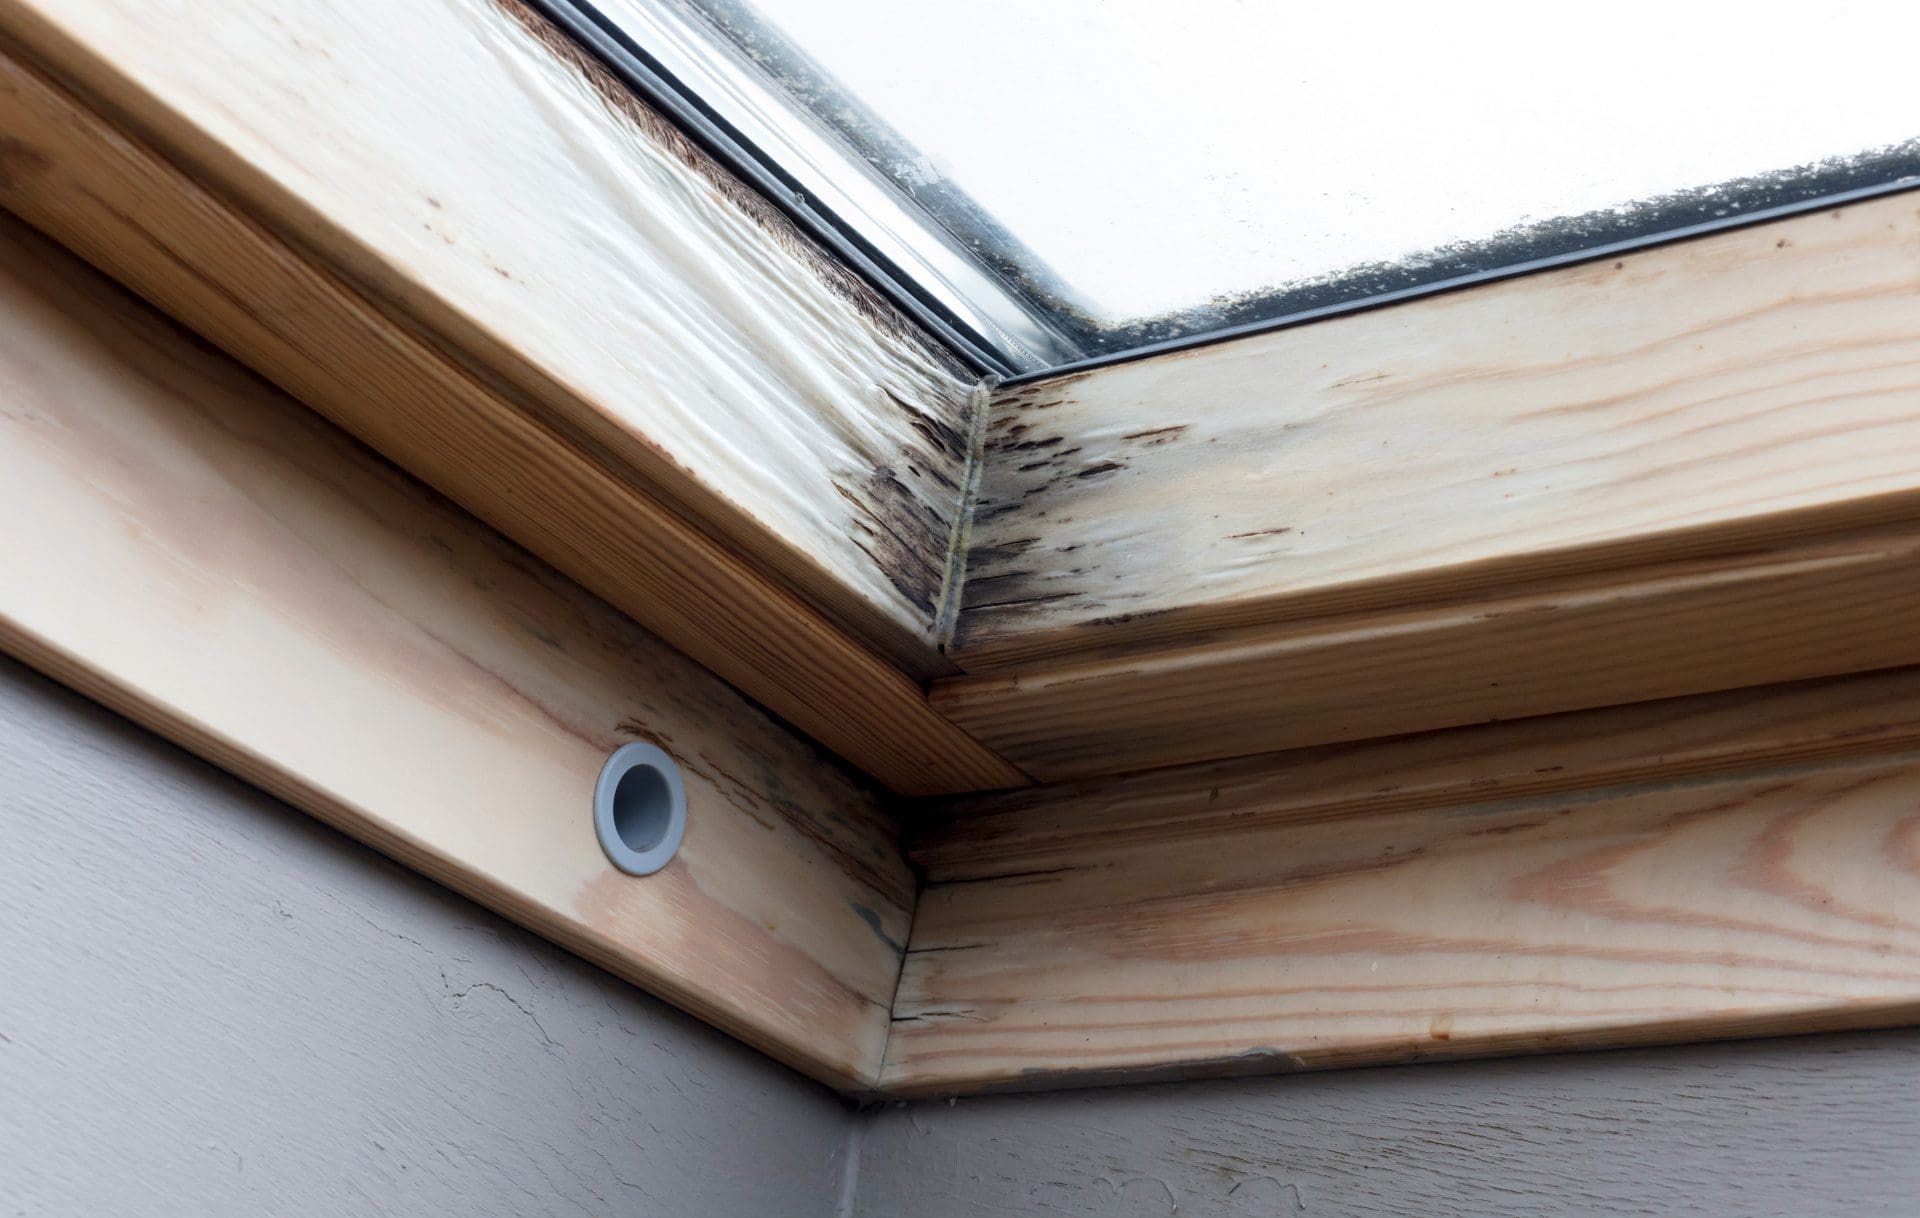 Holzfenster | Fensterrahmen von eindringendem Wasser und/oder Kondenswasser aufgequollen; erste Schimmelbildung (© michaklootwijk / stock.adobe.com)